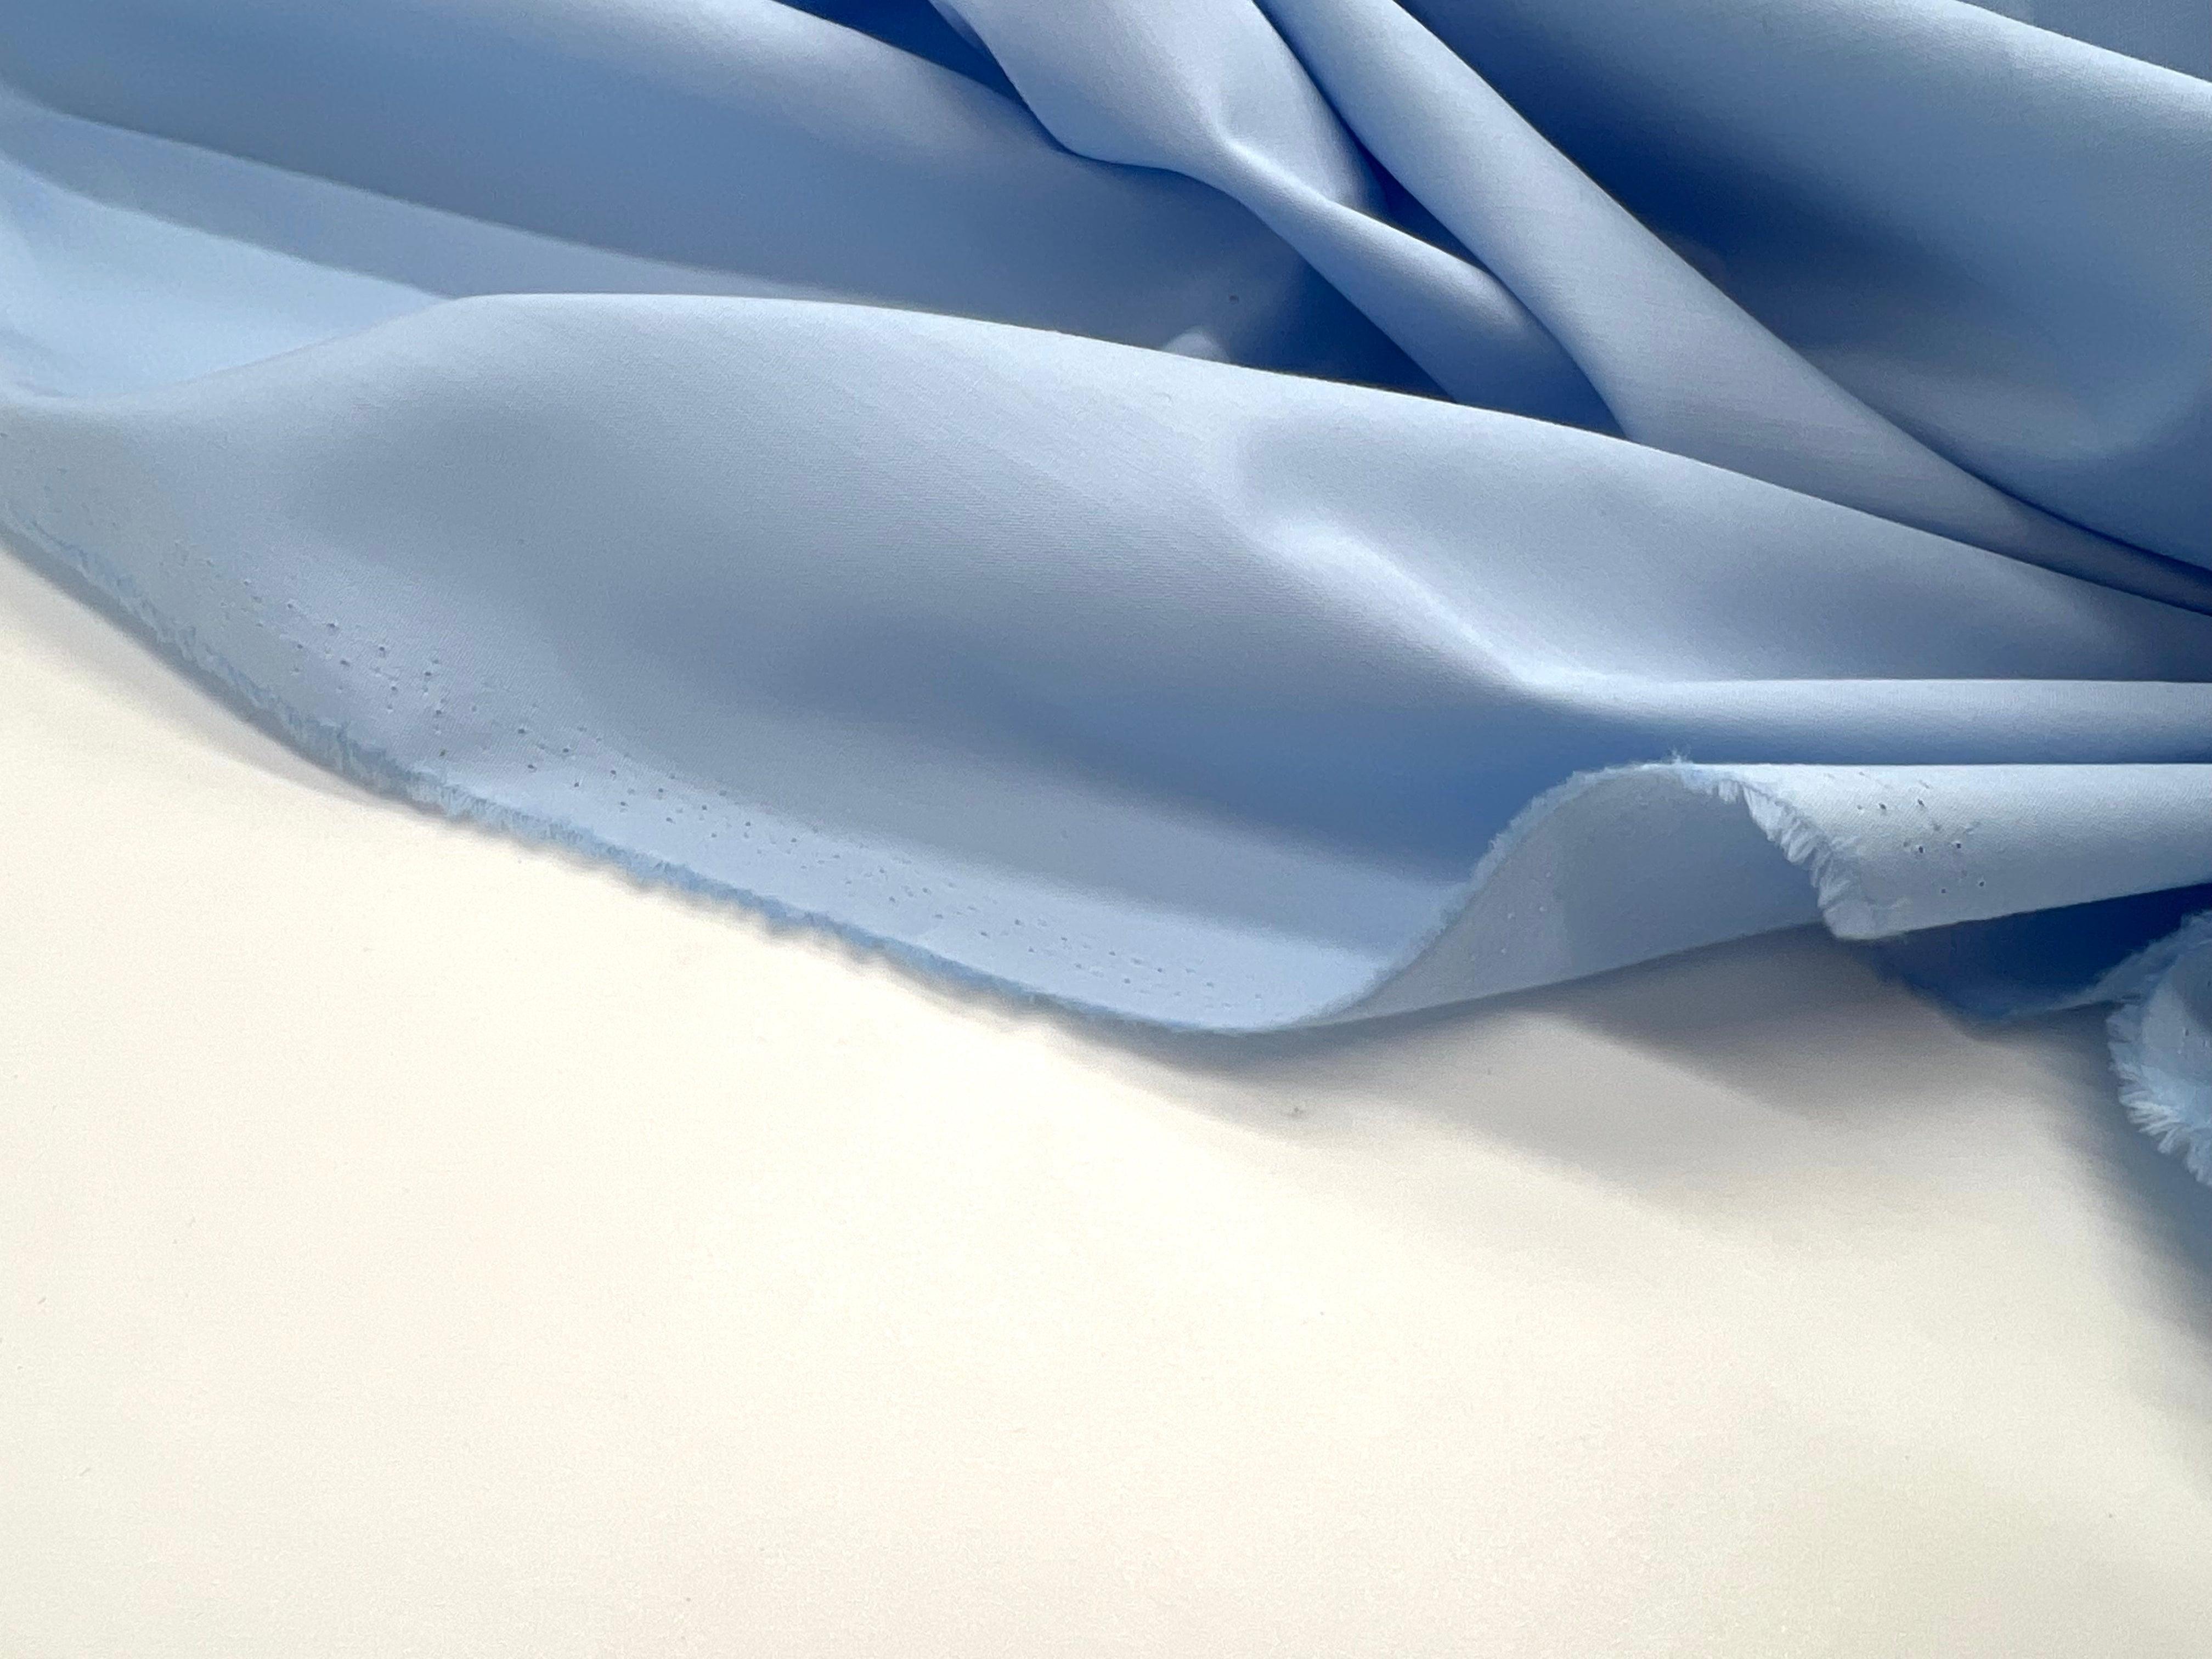 Tissu Popeline Coton Nuage - Bleu ciel - popeline au Mètre